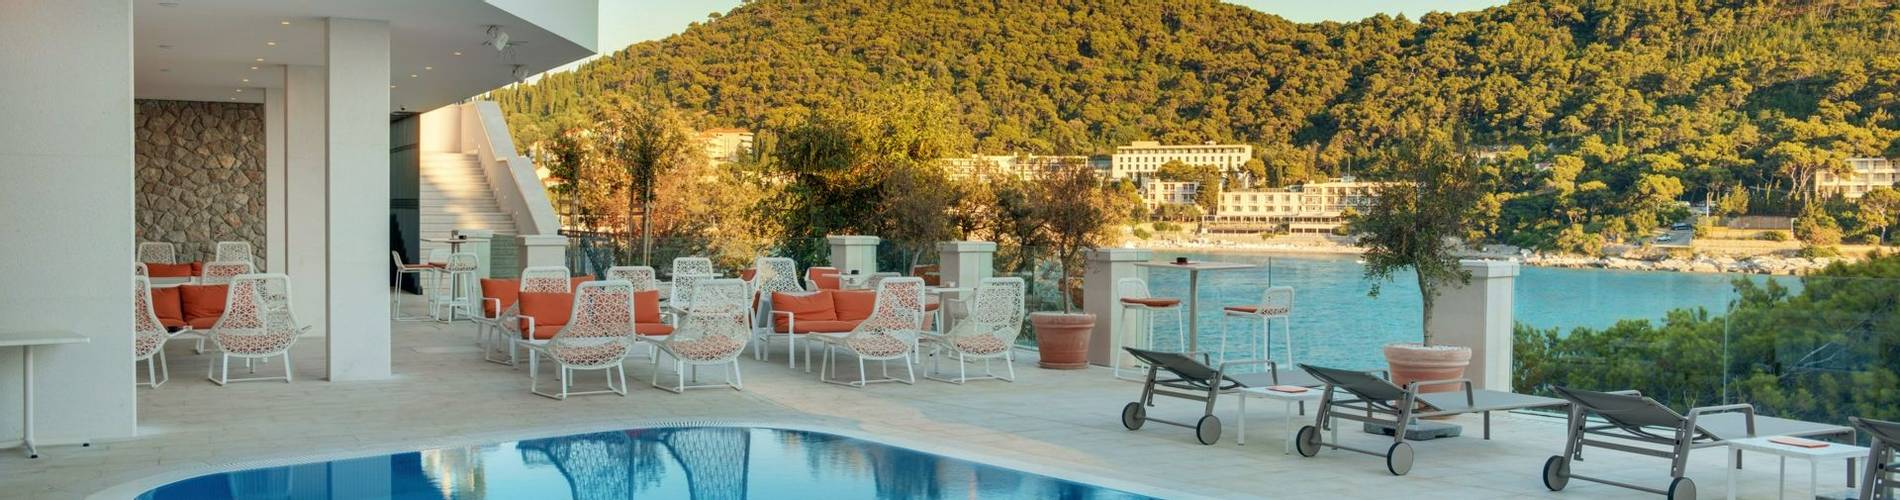 Hotel More, Dubrovnik, Croatia (56).jpg